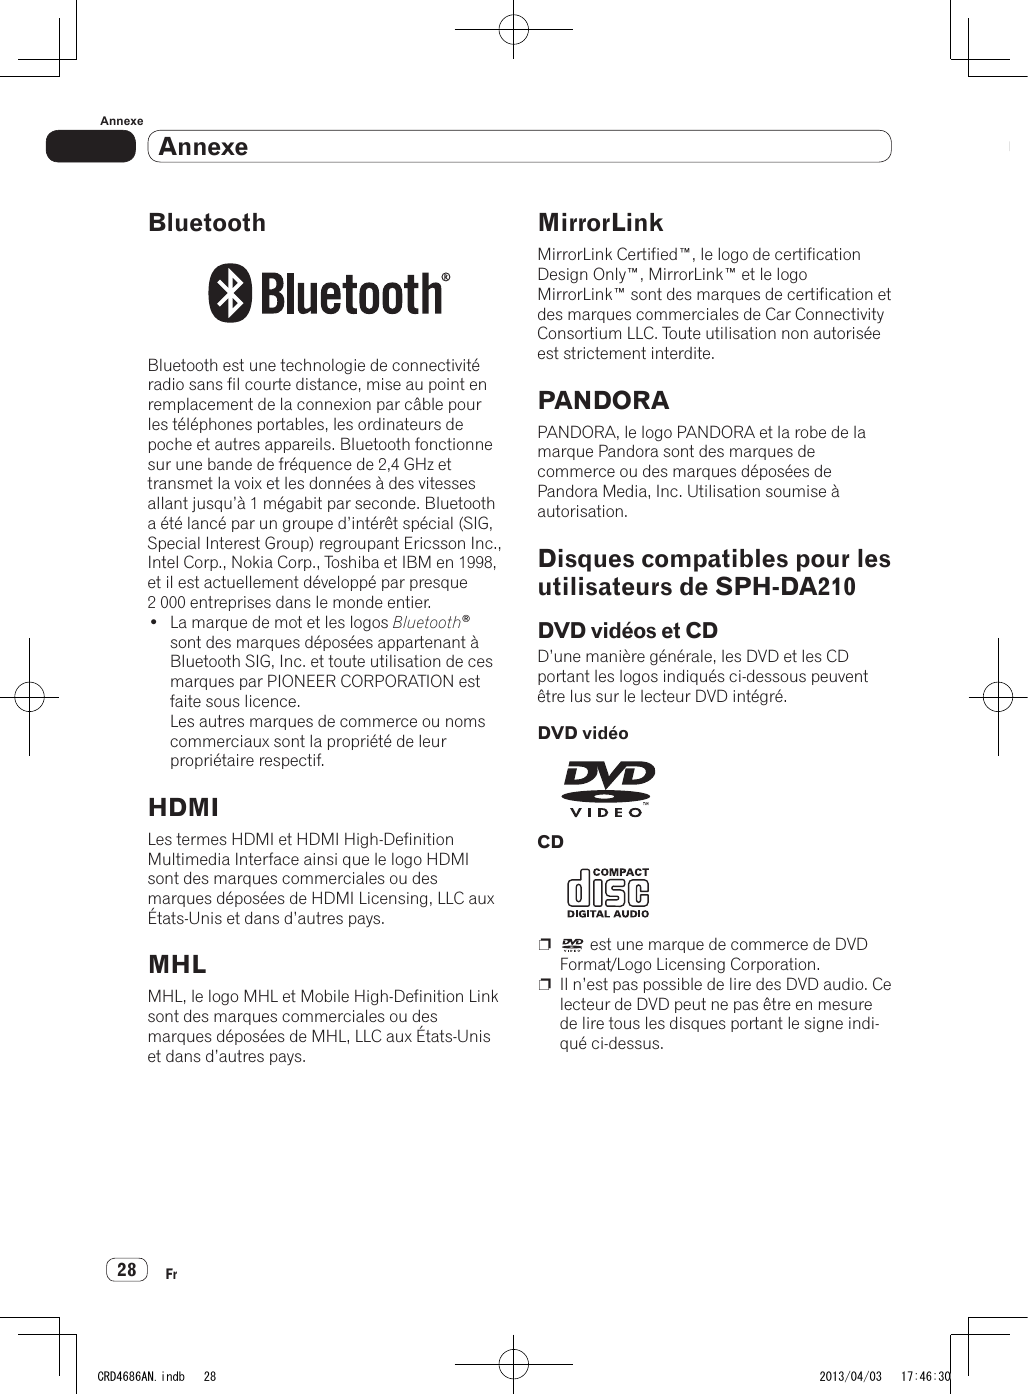 AnnexeAnnexe28FrAnnexeBluetoothBluetooth est une technologie de connectivité radio sans fil courte distance, mise au point en remplacement de la connexion par câble pour les téléphones portables, les ordinateurs de poche et autres appareils. Bluetooth fonctionne sur une bande de fréquence de 2,4 GHz et transmet la voix et les données à des vitesses allant jusqu’à 1 mégabit par seconde. Bluetooth a été lancé par un groupe d’intérêt spécial (SIG, Special Interest Group) regroupant Ericsson Inc., Intel Corp., Nokia Corp., Toshiba et IBM en 1998, et il est actuellement développé par presque 2 000 entreprises dans le monde entier.• La marque de mot et les logos Bluetooth® sont des marques déposées appartenant à Bluetooth SIG, Inc. et toute utilisation de ces marques par PIONEER CORPORATION est faite sous licence. Les autres marques de commerce ou noms commerciaux sont la propriété de leur propriétaire respectif.HDMILes termes HDMI et HDMI High-Definition Multimedia Interface ainsi que le logo HDMI sont des marques commerciales ou des marques déposées de HDMI Licensing, LLC aux États-Unis et dans d’autres pays.MHLMHL, le logo MHL et Mobile High-Definition Link sont des marques commerciales ou des marques déposées de MHL, LLC aux États-Unis et dans d’autres pays.MirrorLinkMirrorLink Certified™, le logo de certification Design Only™, MirrorLink™ et le logo MirrorLink™ sont des marques de certification et des marques commerciales de Car Connectivity Consortium LLC. Toute utilisation non autorisée est strictement interdite.PANDORAPANDORA, le logo PANDORA et la robe de la marque Pandora sont des marques de commerce ou des marques déposées de Pandora Media, Inc. Utilisation soumise à autorisation.Disques compatibles pour les utilisateurs de SPH-DA210DVD vidéos et CDD’une manière générale, les DVD et les CD portant les logos indiqués ci-dessous peuvent être lus sur le lecteur DVD intégré.DVD vidéoCDp   est une marque de commerce de DVD Format/Logo Licensing Corporation.p  Il n’est pas possible de lire des DVD audio. Ce lecteur de DVD peut ne pas être en mesure de lire tous les disques portant le signe indi-qué ci-dessus.CRD4686AN.indb   28 2013/04/03   17:46:30